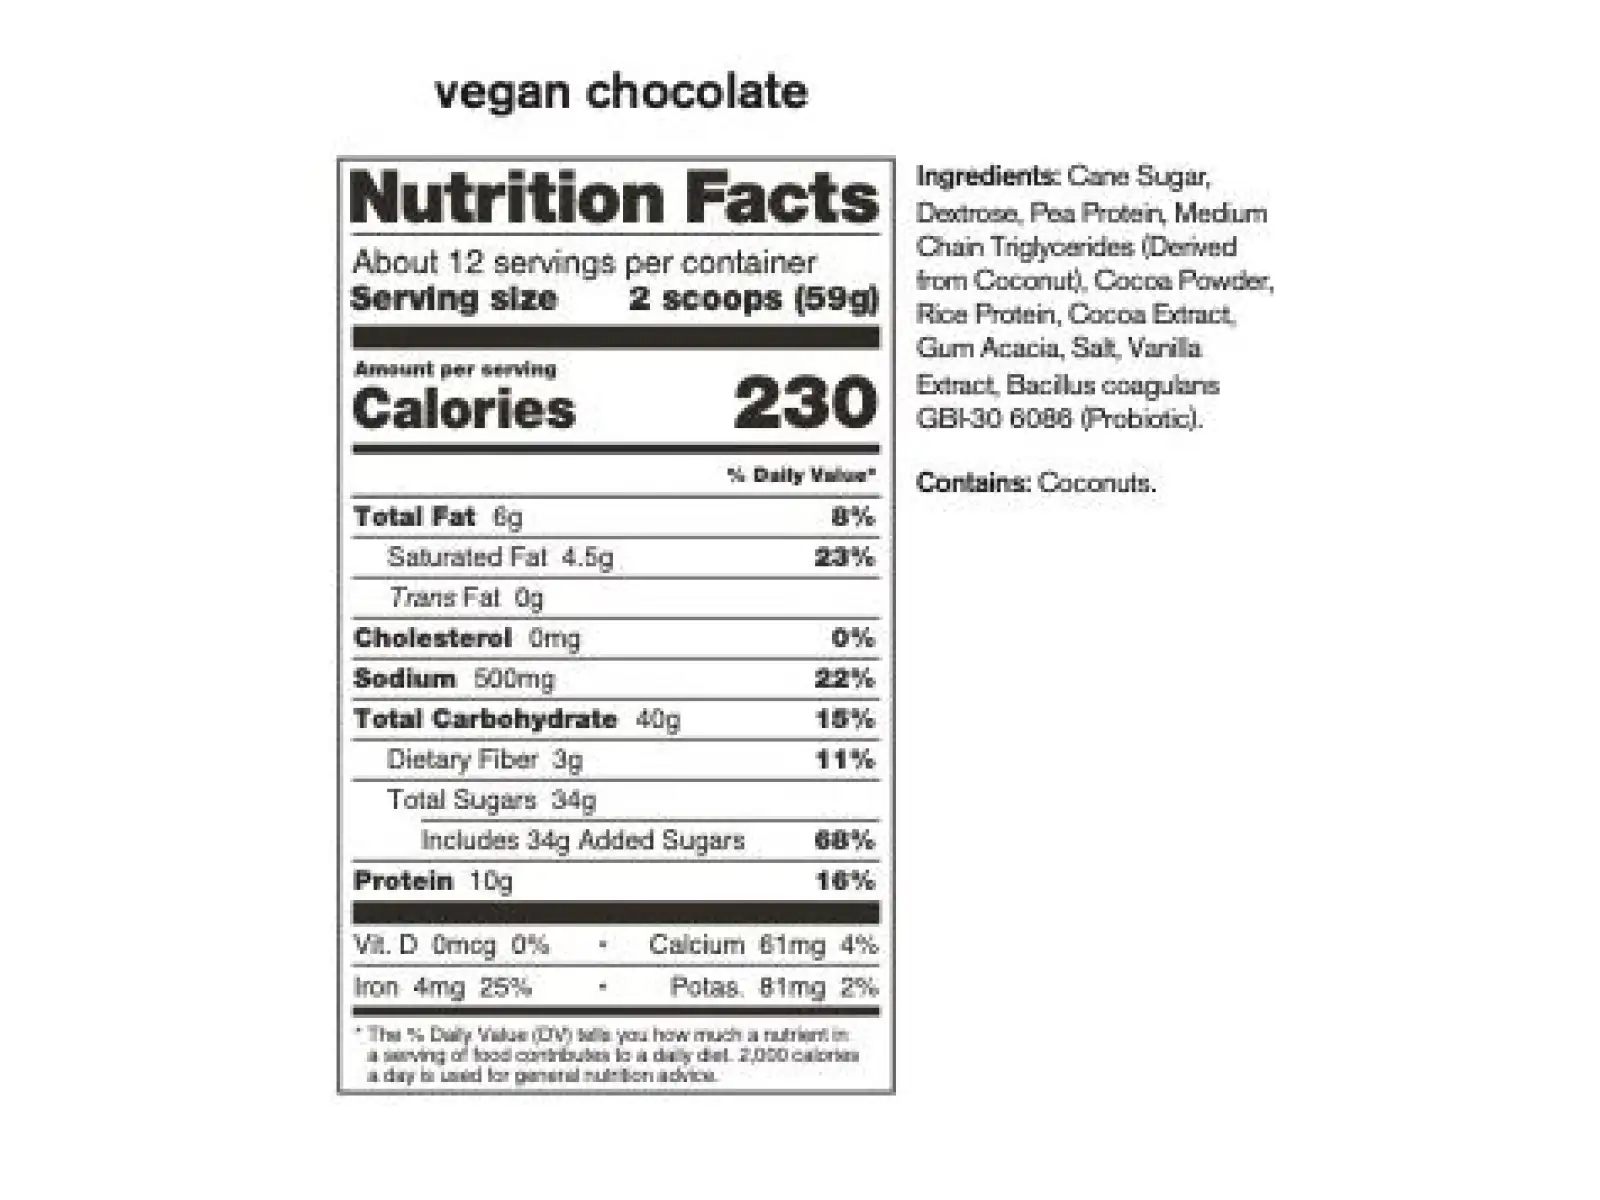 Skratch Labs Vegan Recovery Sport Drink Mix 708 g čokoláda